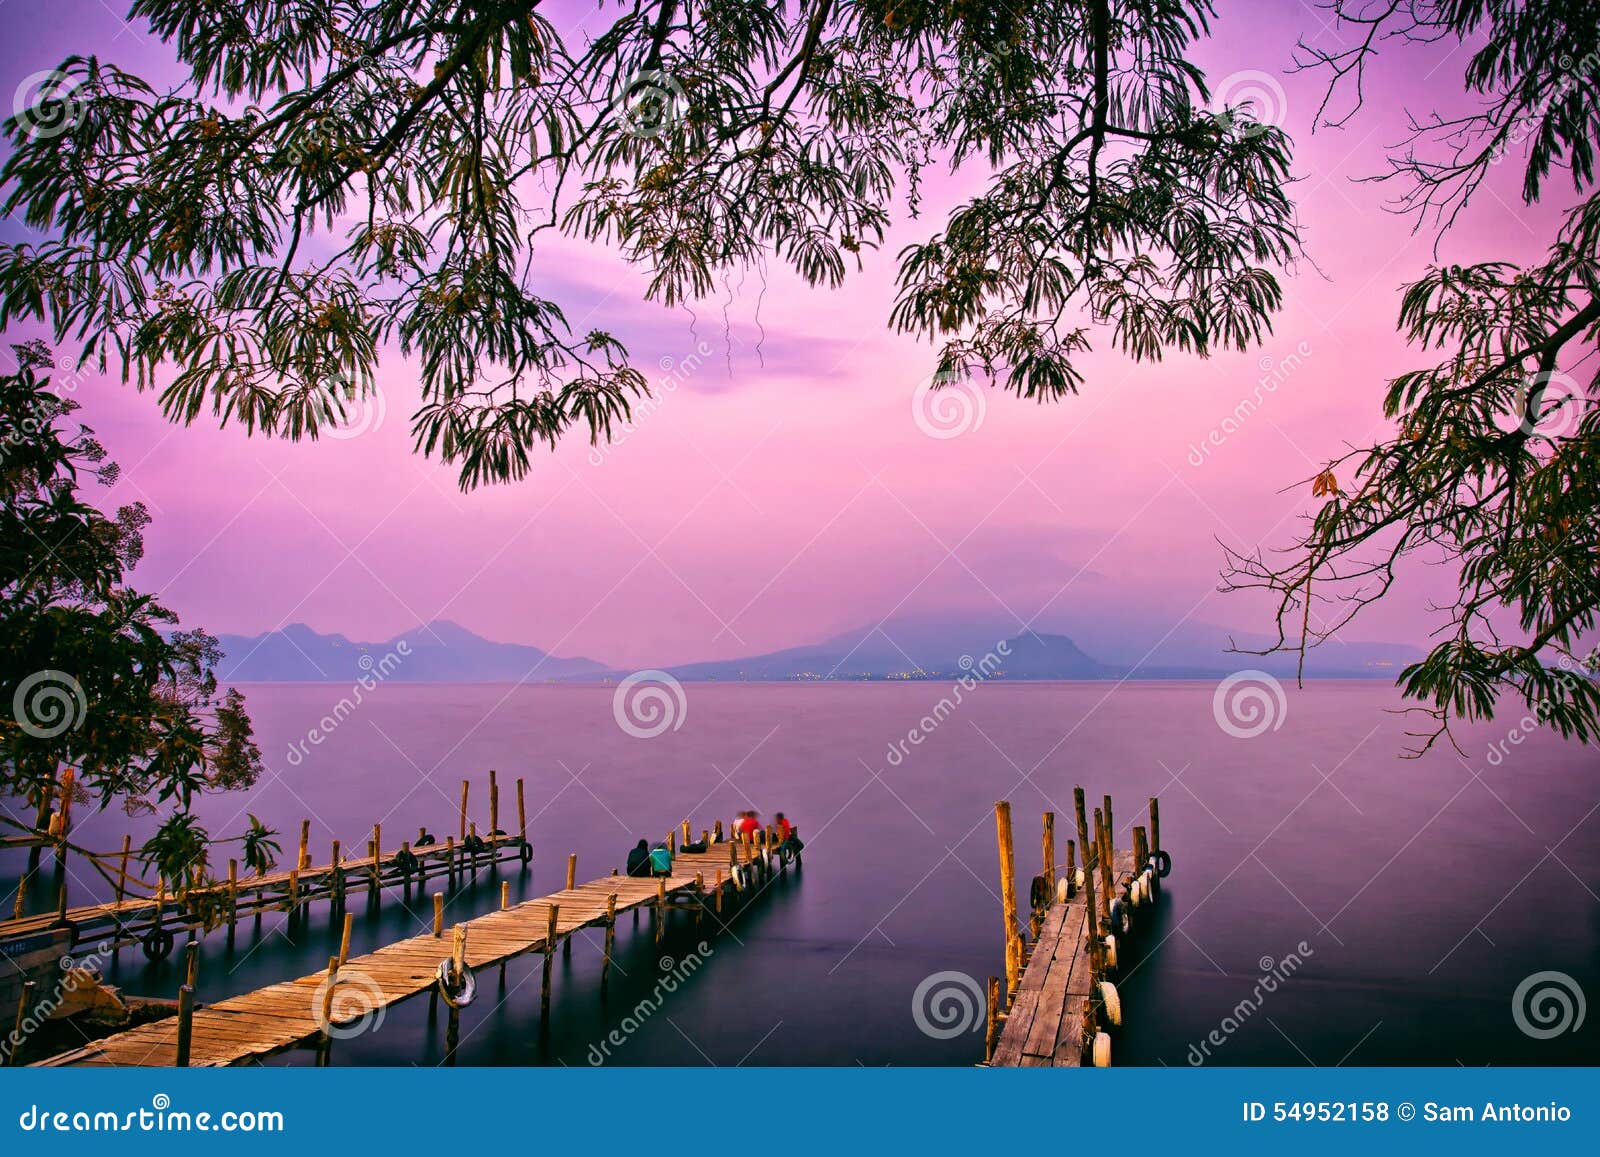 panajachel pier sunset, lake atitlan, guatemala, central america